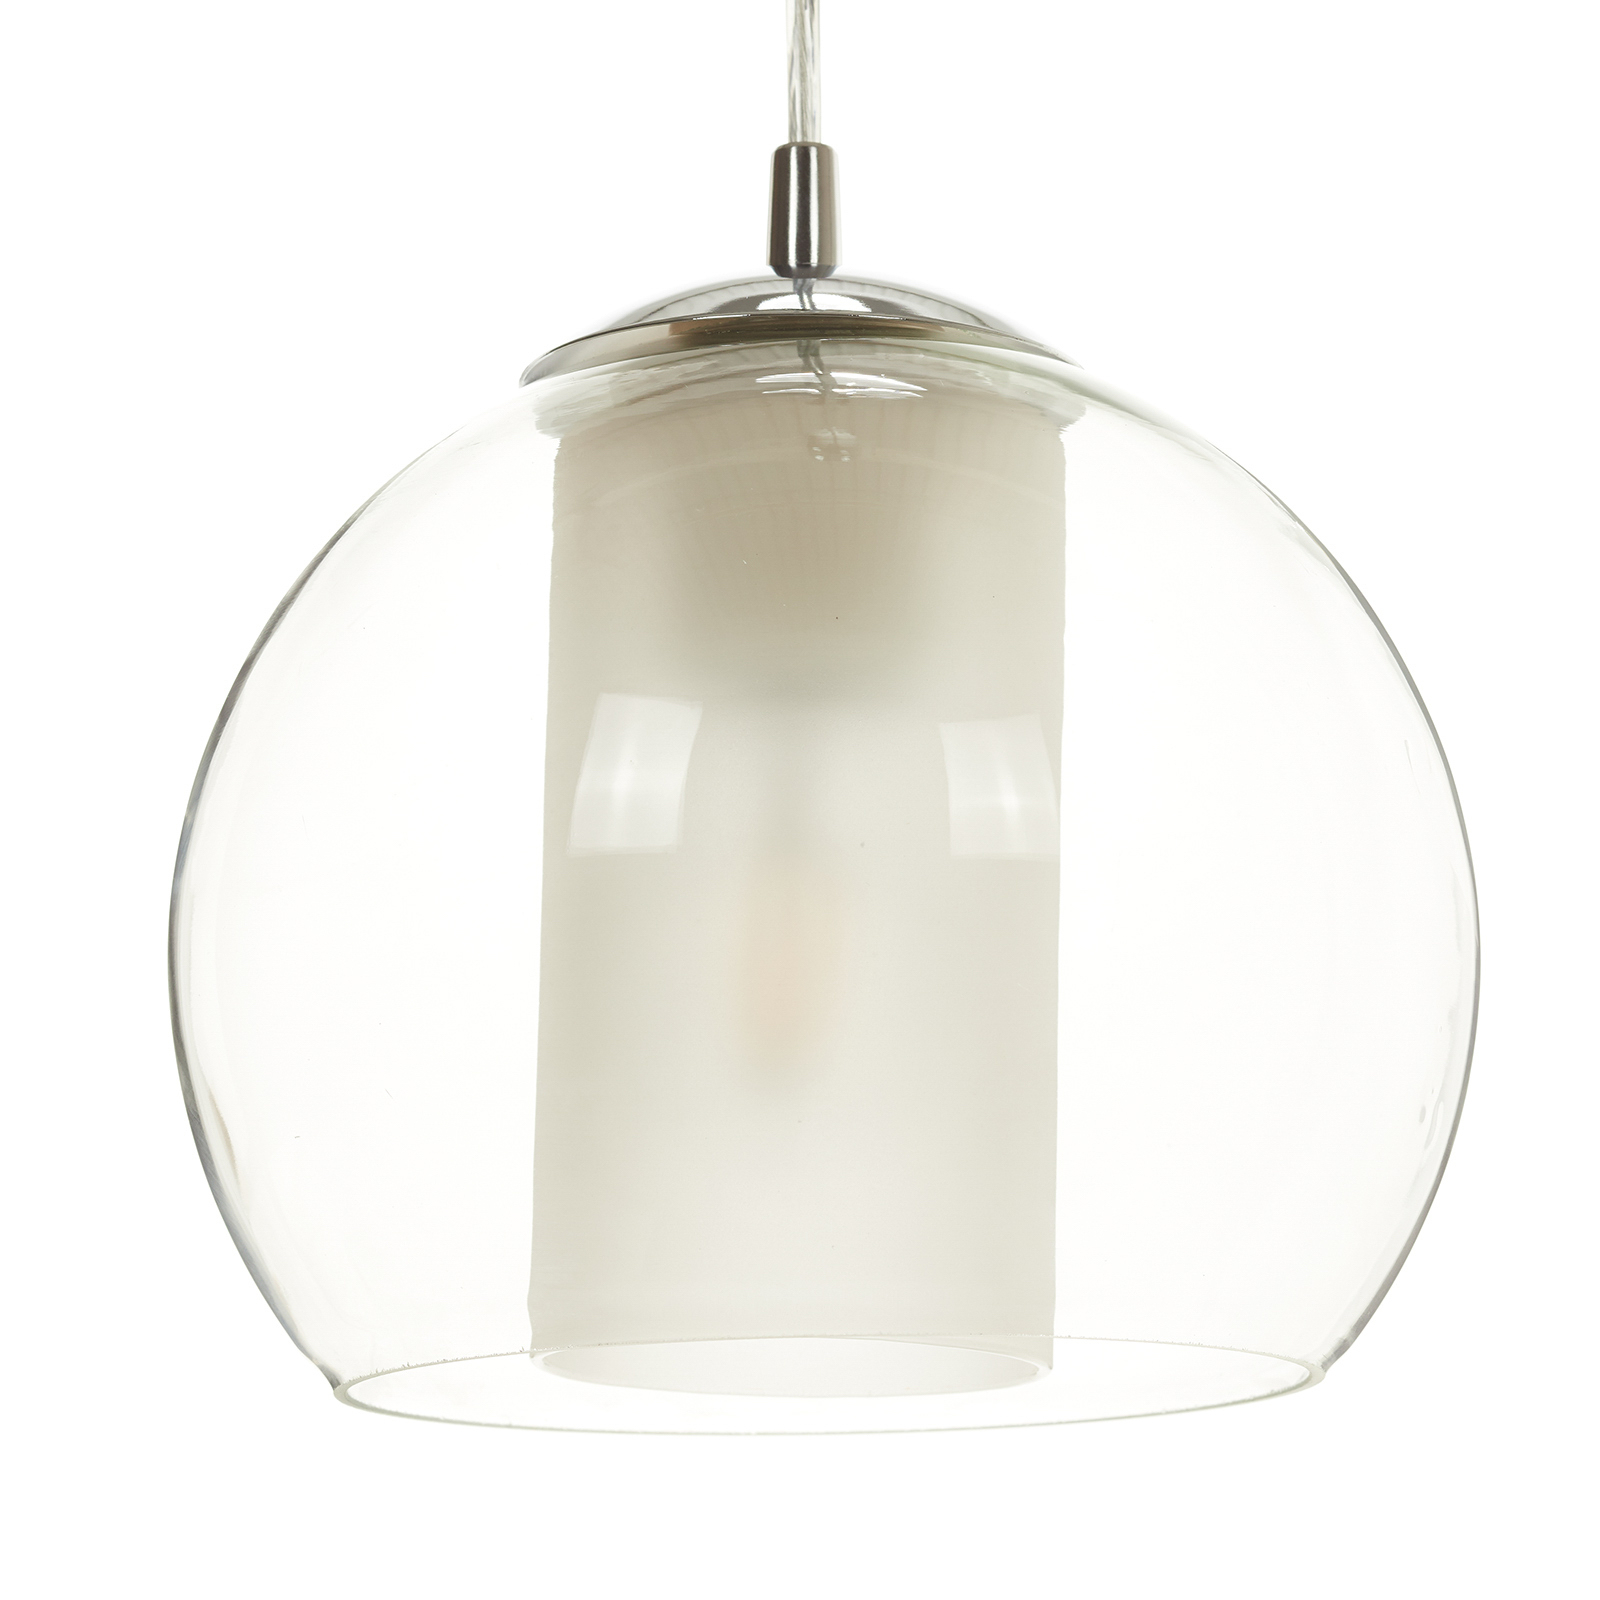 Pregiata lampada a pendolo di vetro Bolsano